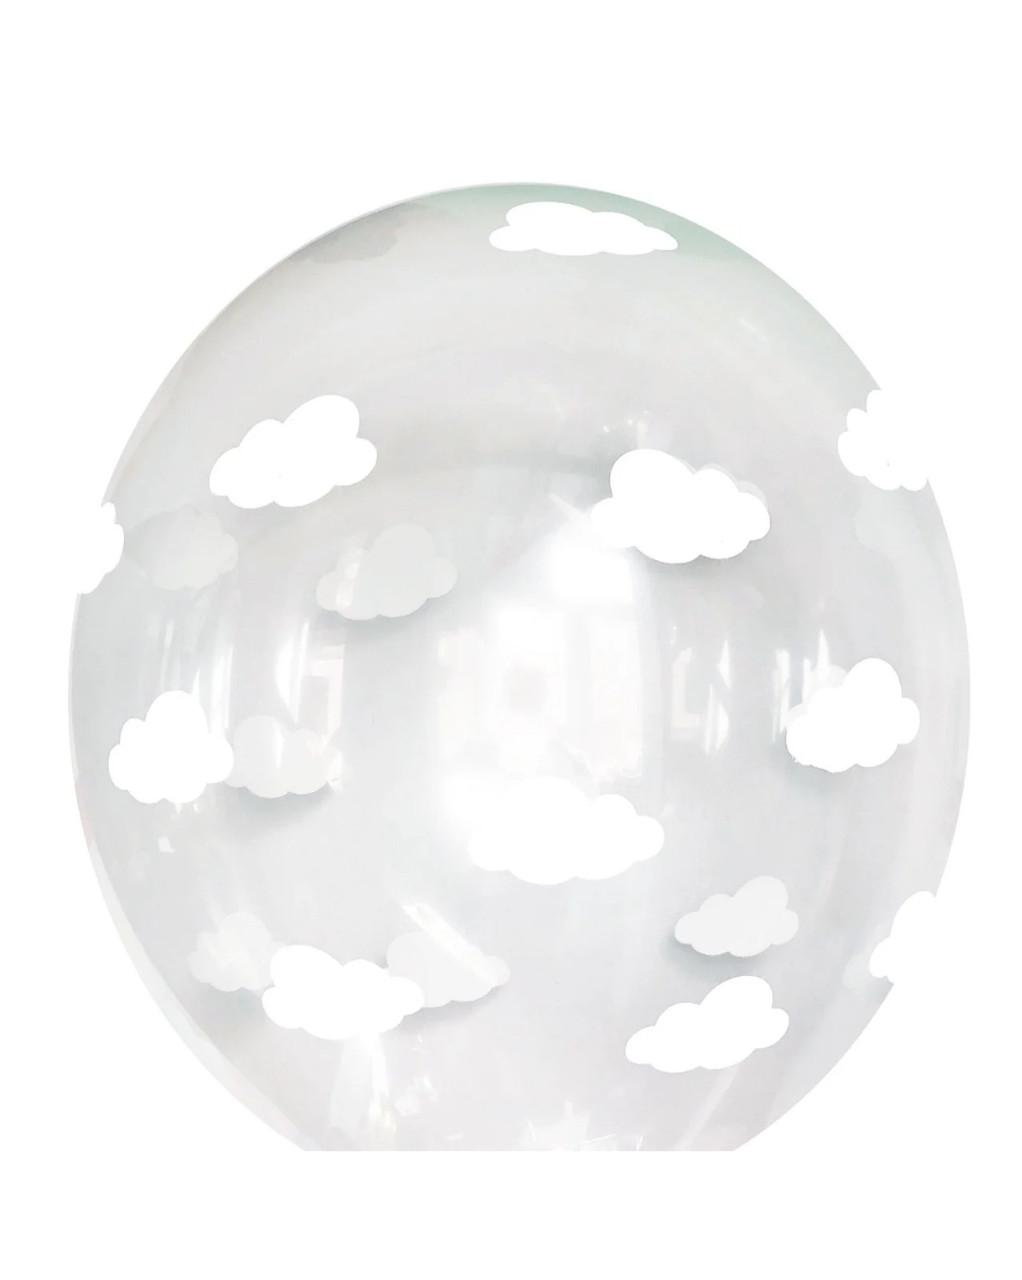 Кулька гелієва 30 см "Хмари на прозорому "код 07-35